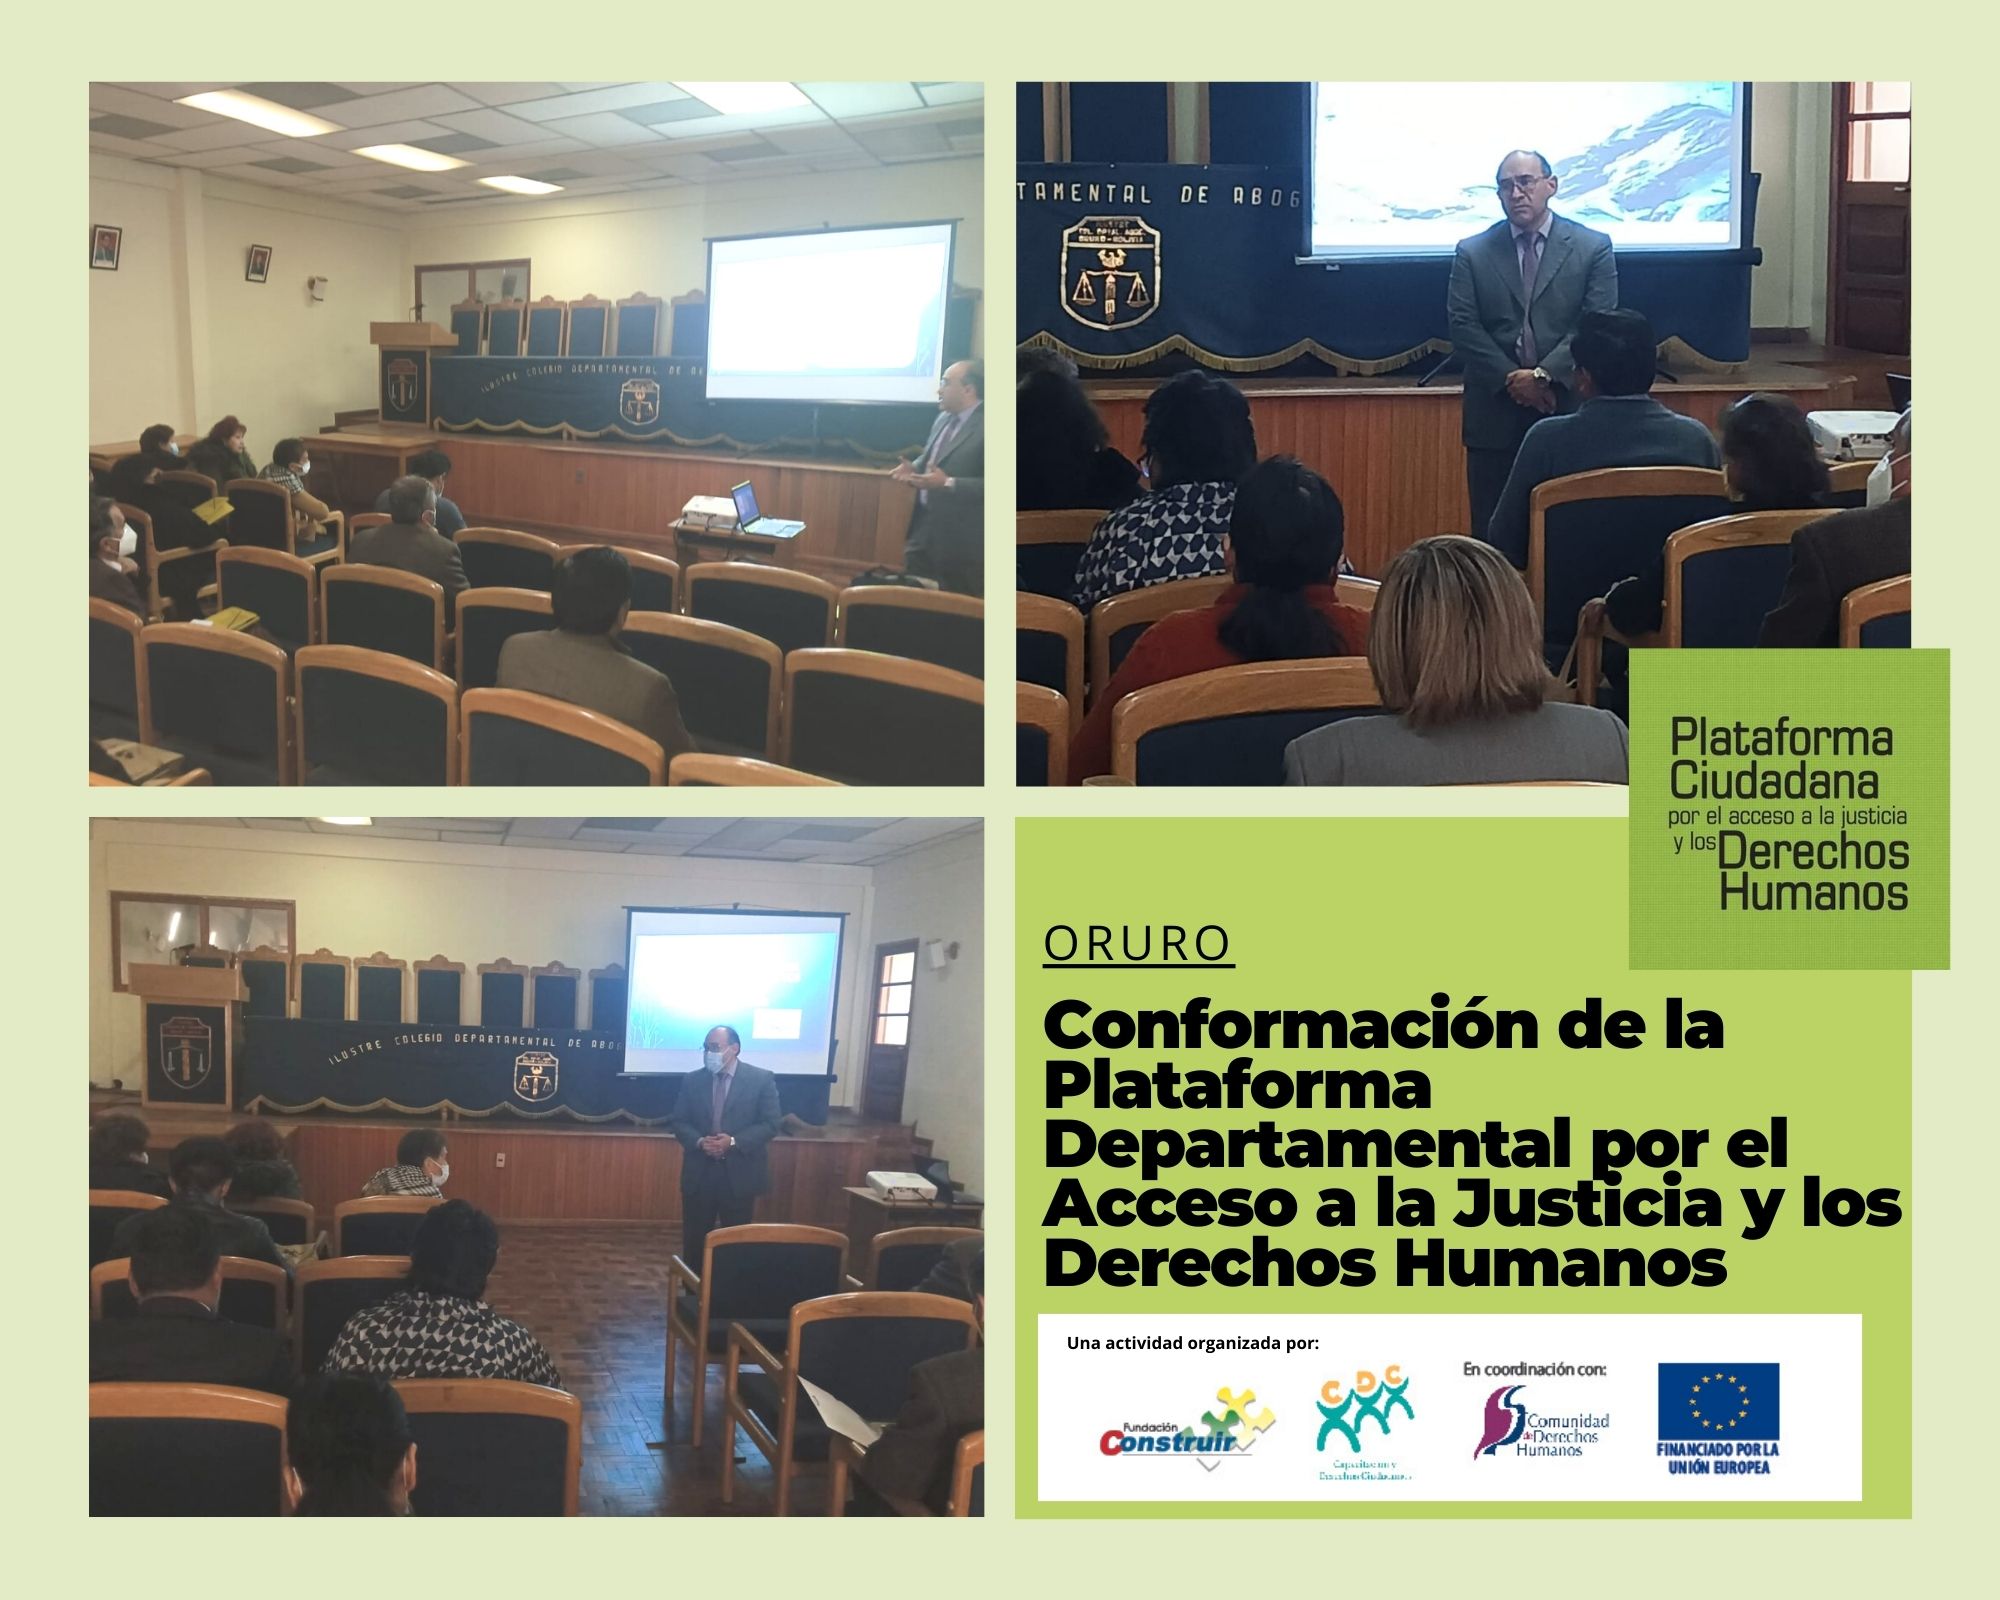 Oruro- Conformación de la Plataforma Departamental por el Acceso a la Justicia y los Derechos Humanos